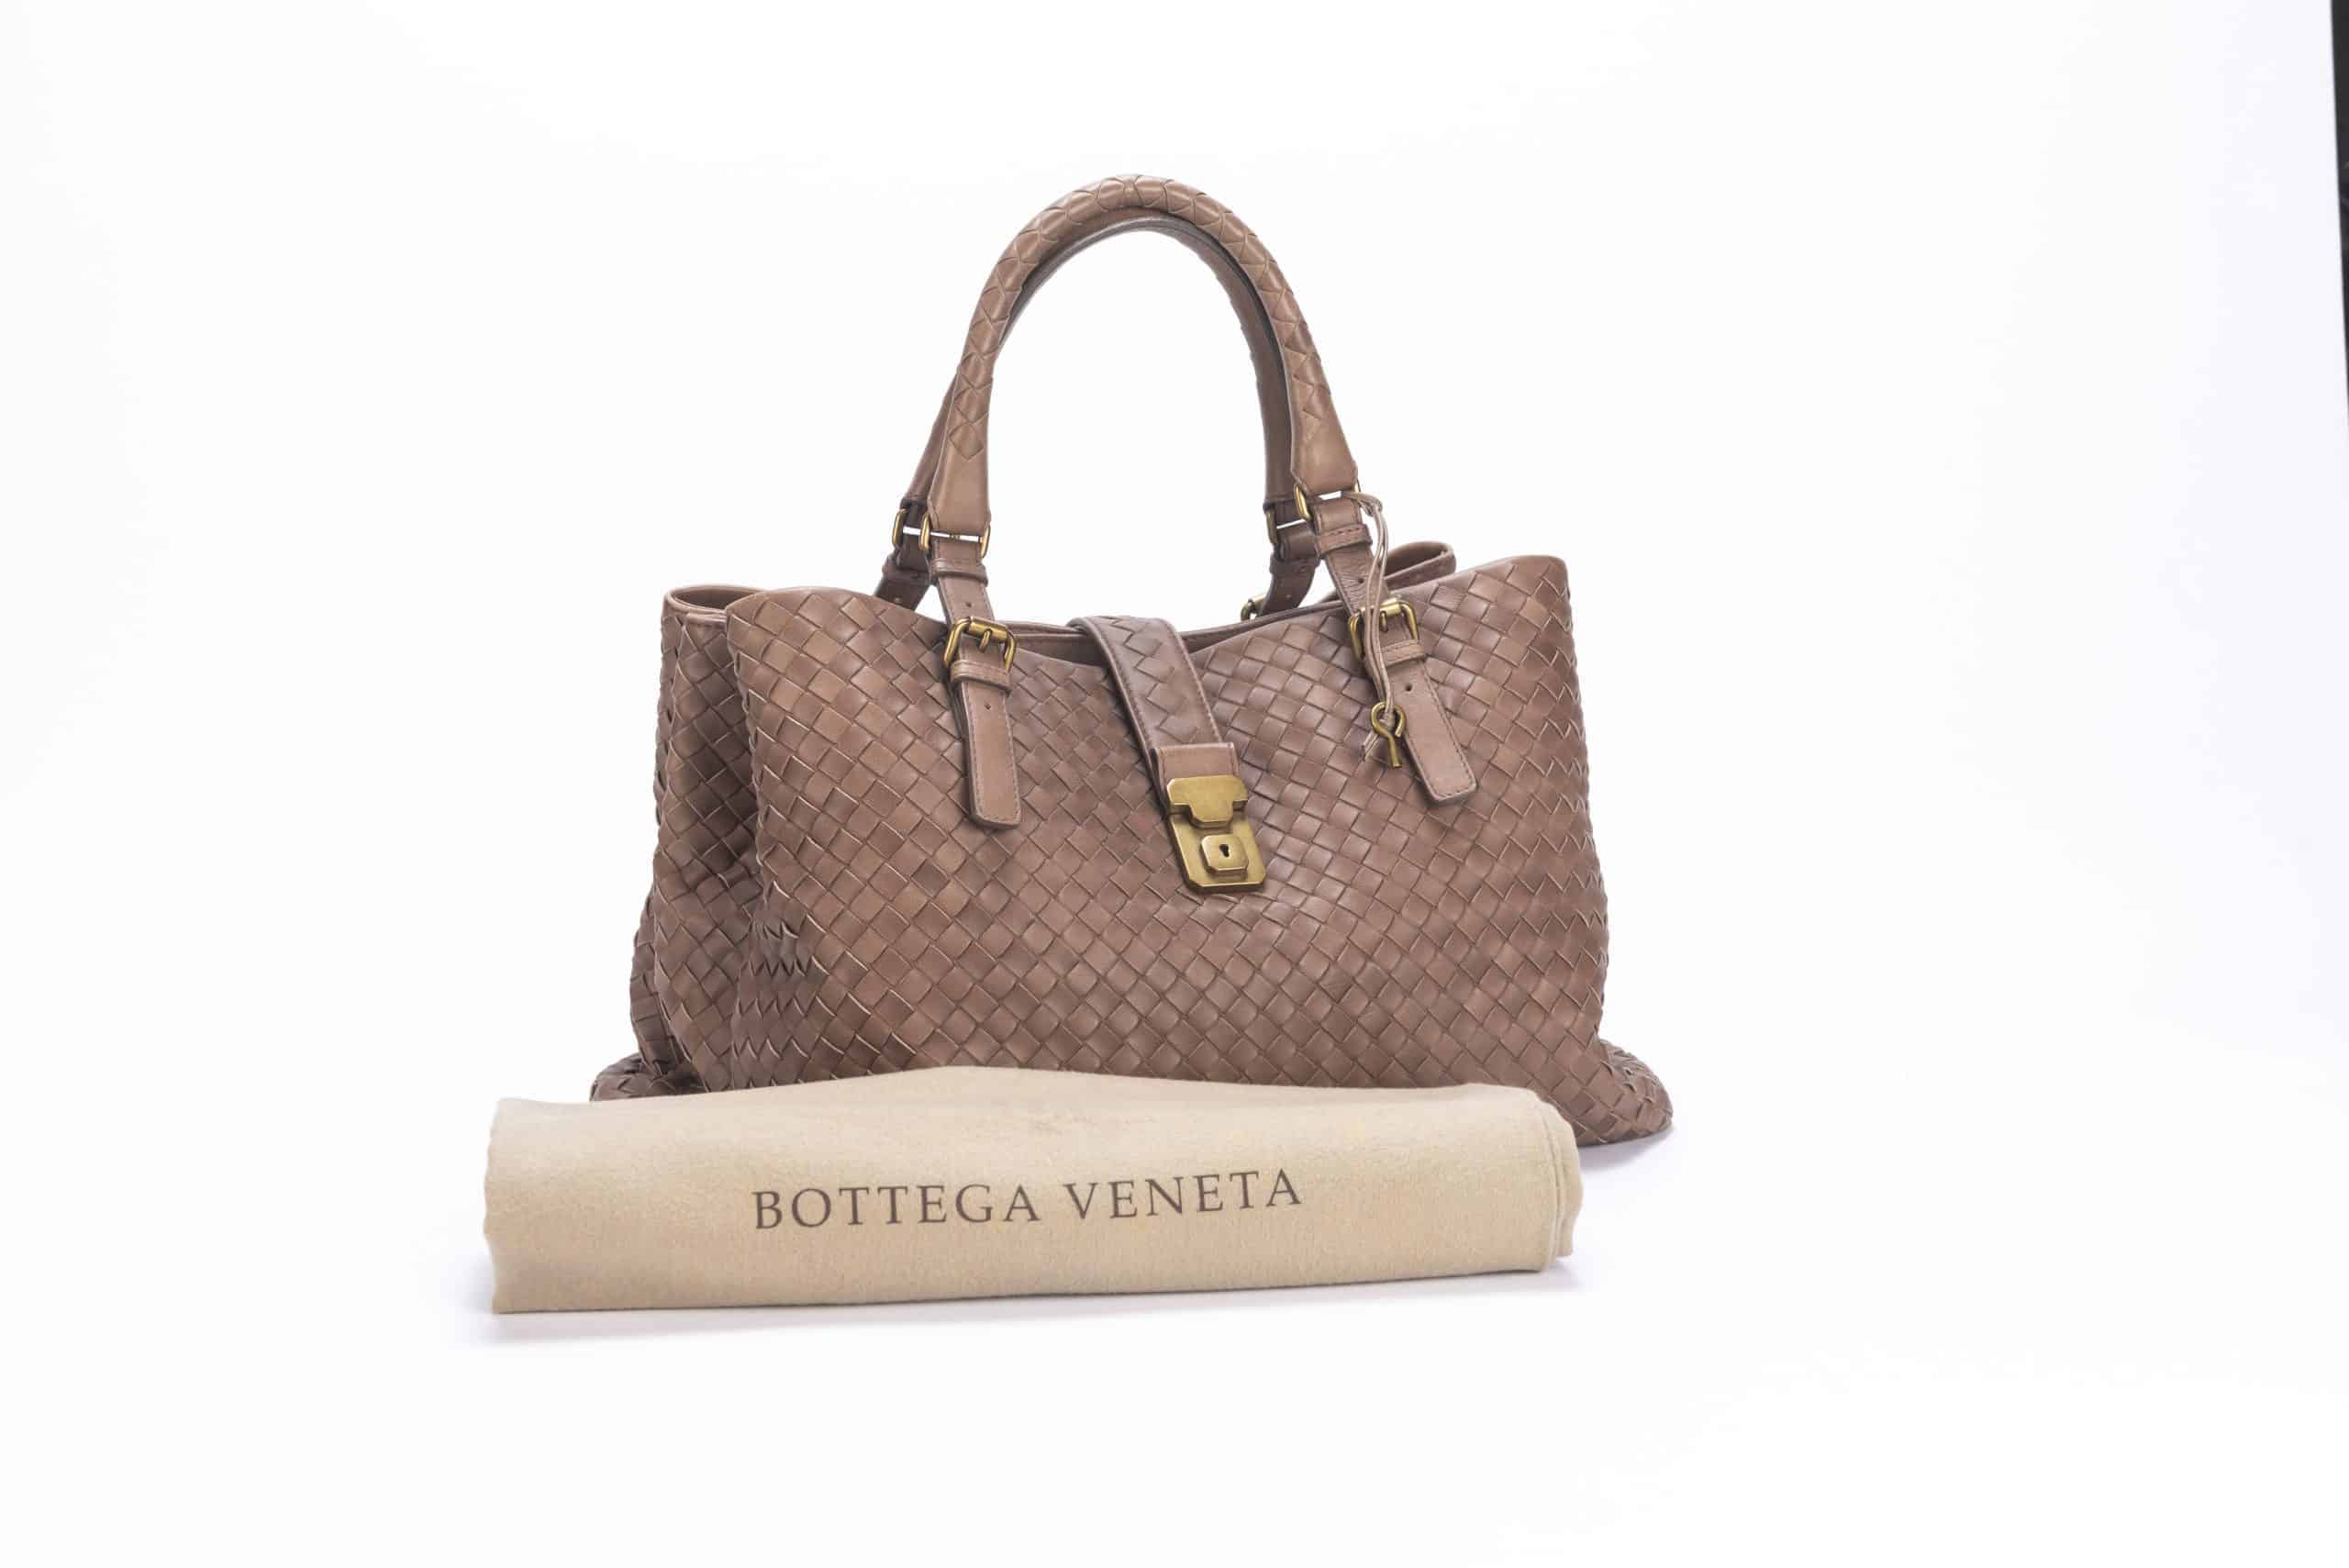 Bottega Veneta Roma Tote Bag Mini Black in Calfskin with Silver